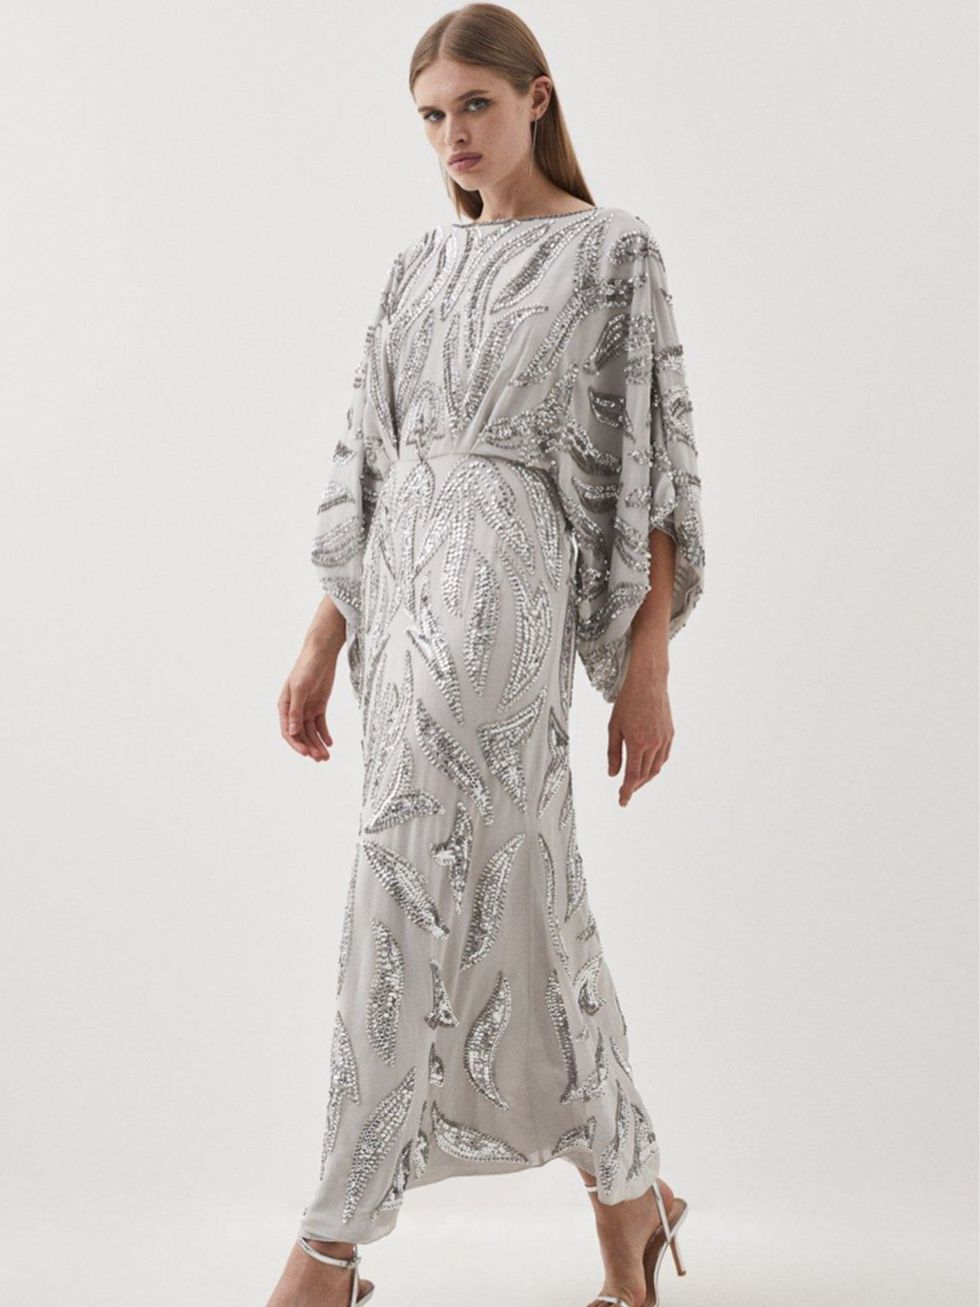 Susanna Reid wears elegant embellished dress from Monsoon.